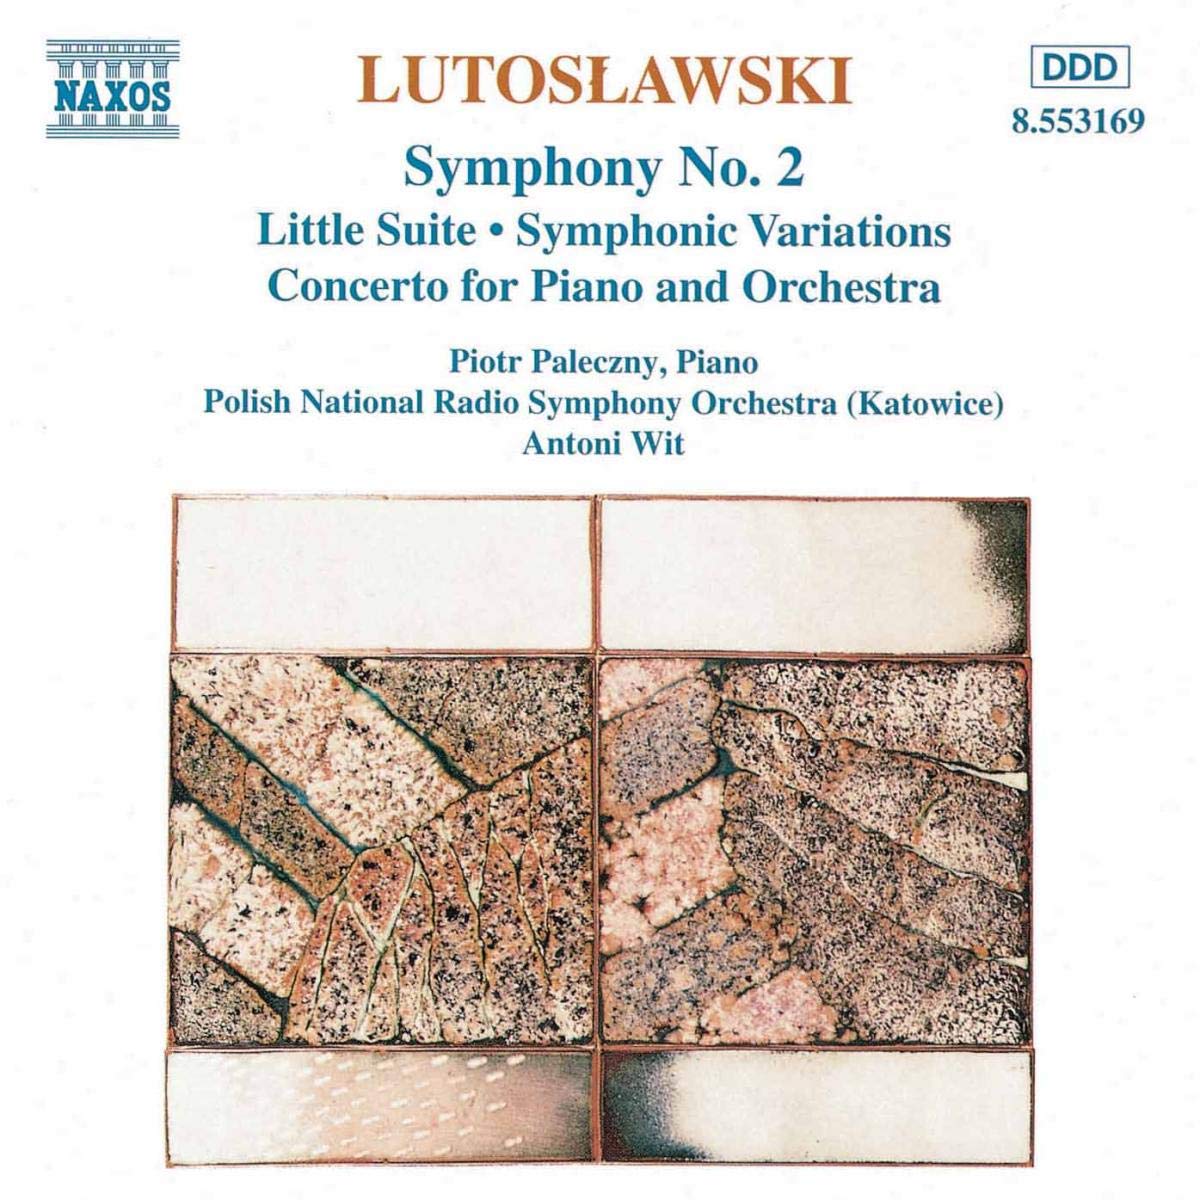 Lutosławski: Symphony No. 2 / Little Suite / Symphonic Variations / Piano Concerto